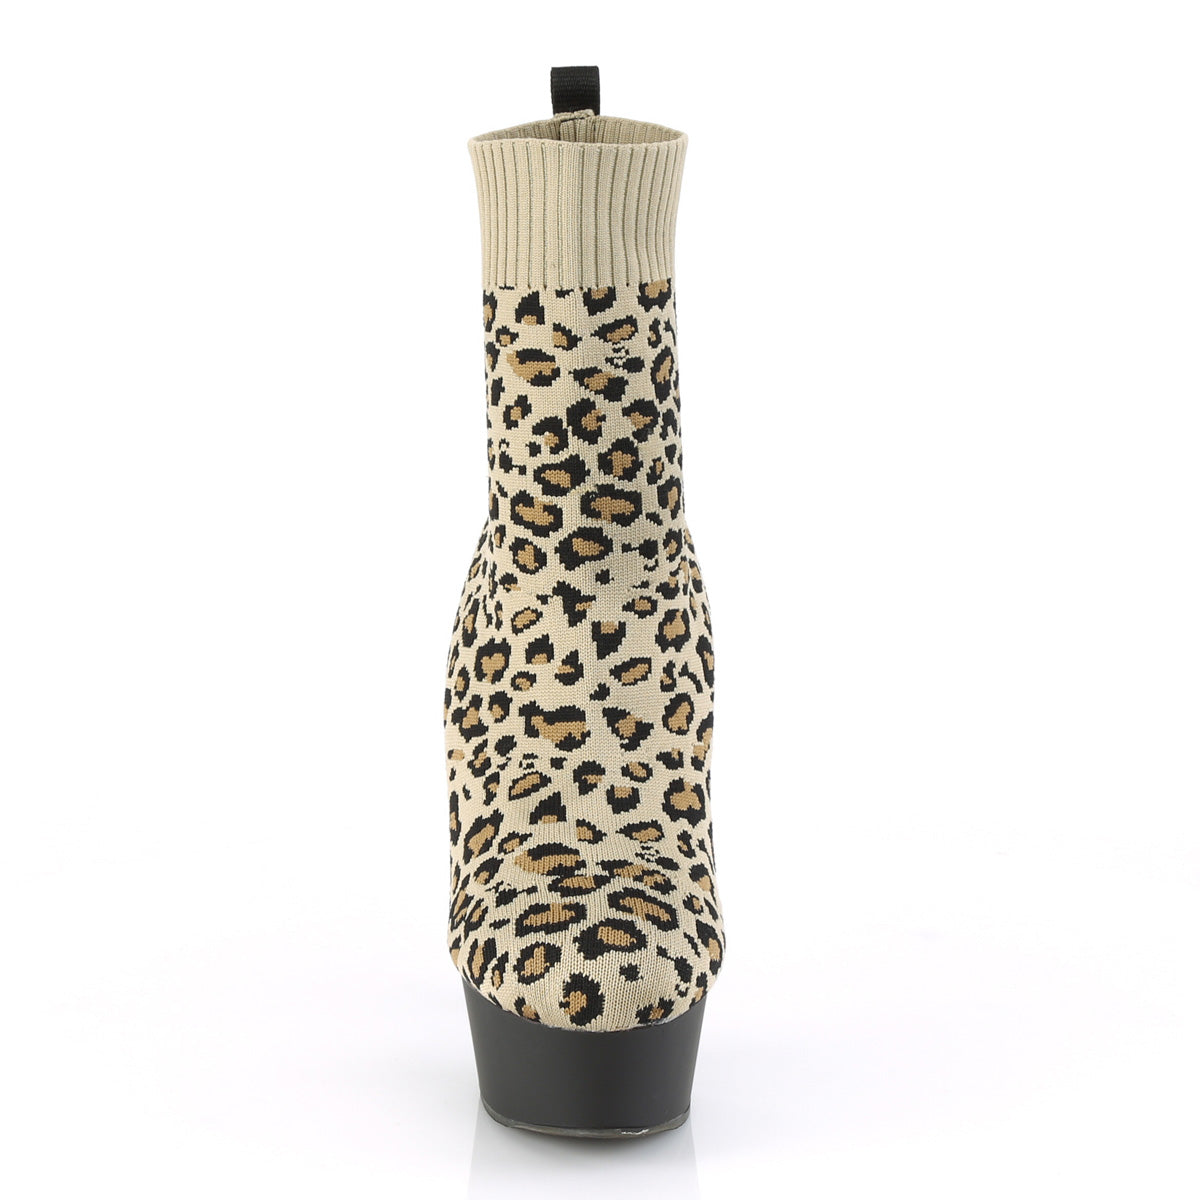 Pleaser Botas de tobillo para mujer DELIGHT-1002LP Tan STR. Tela de impresión de leopardo / BLK MATE